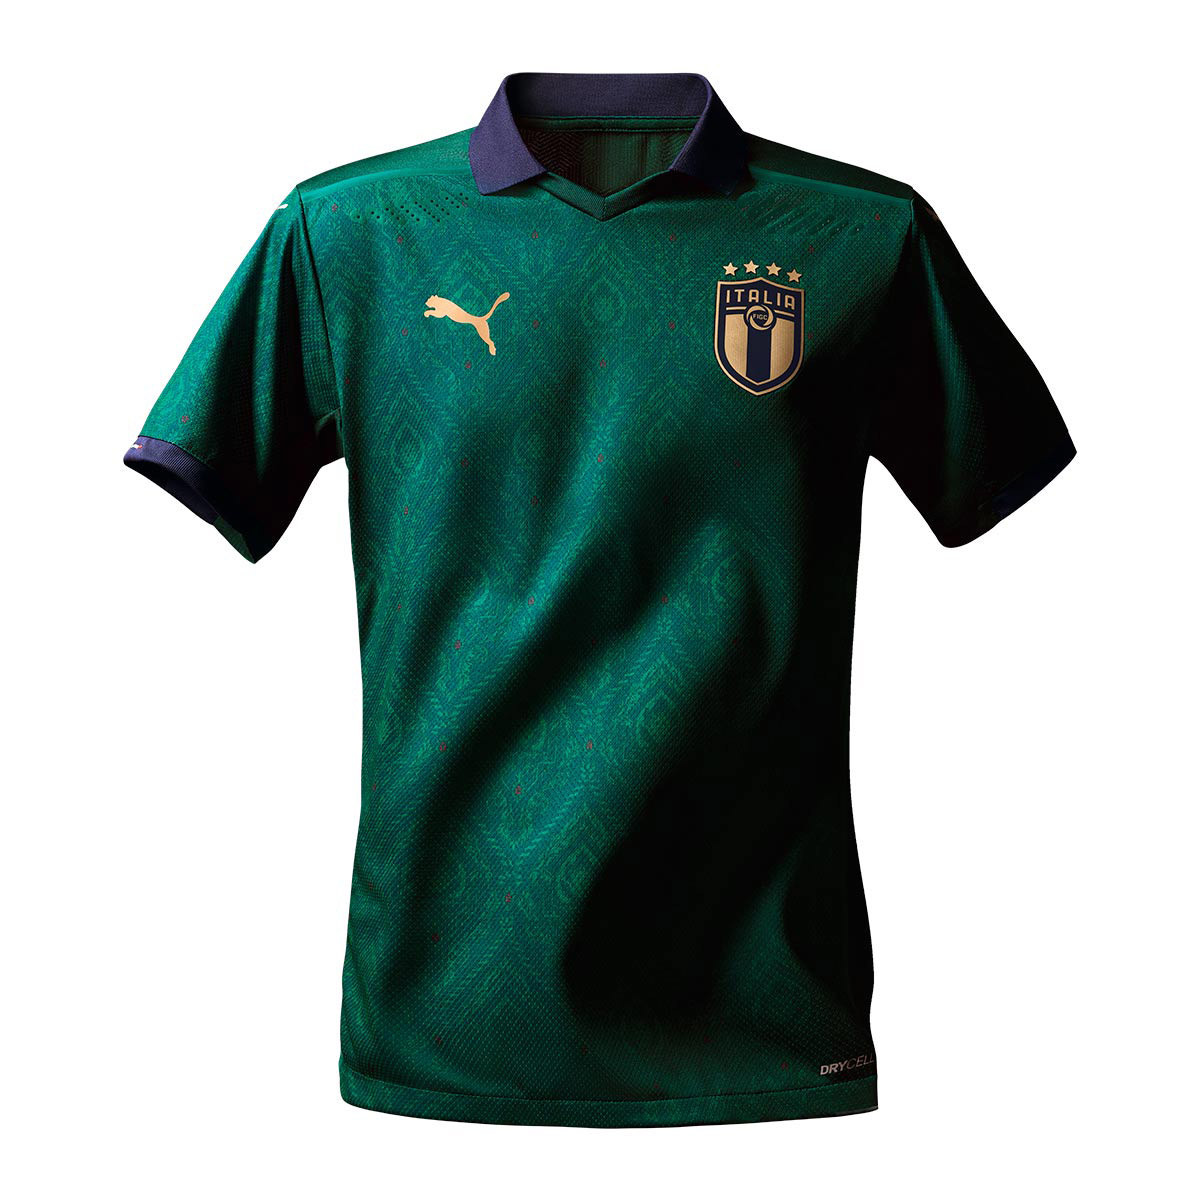 camiseta seleccion italiana 2019